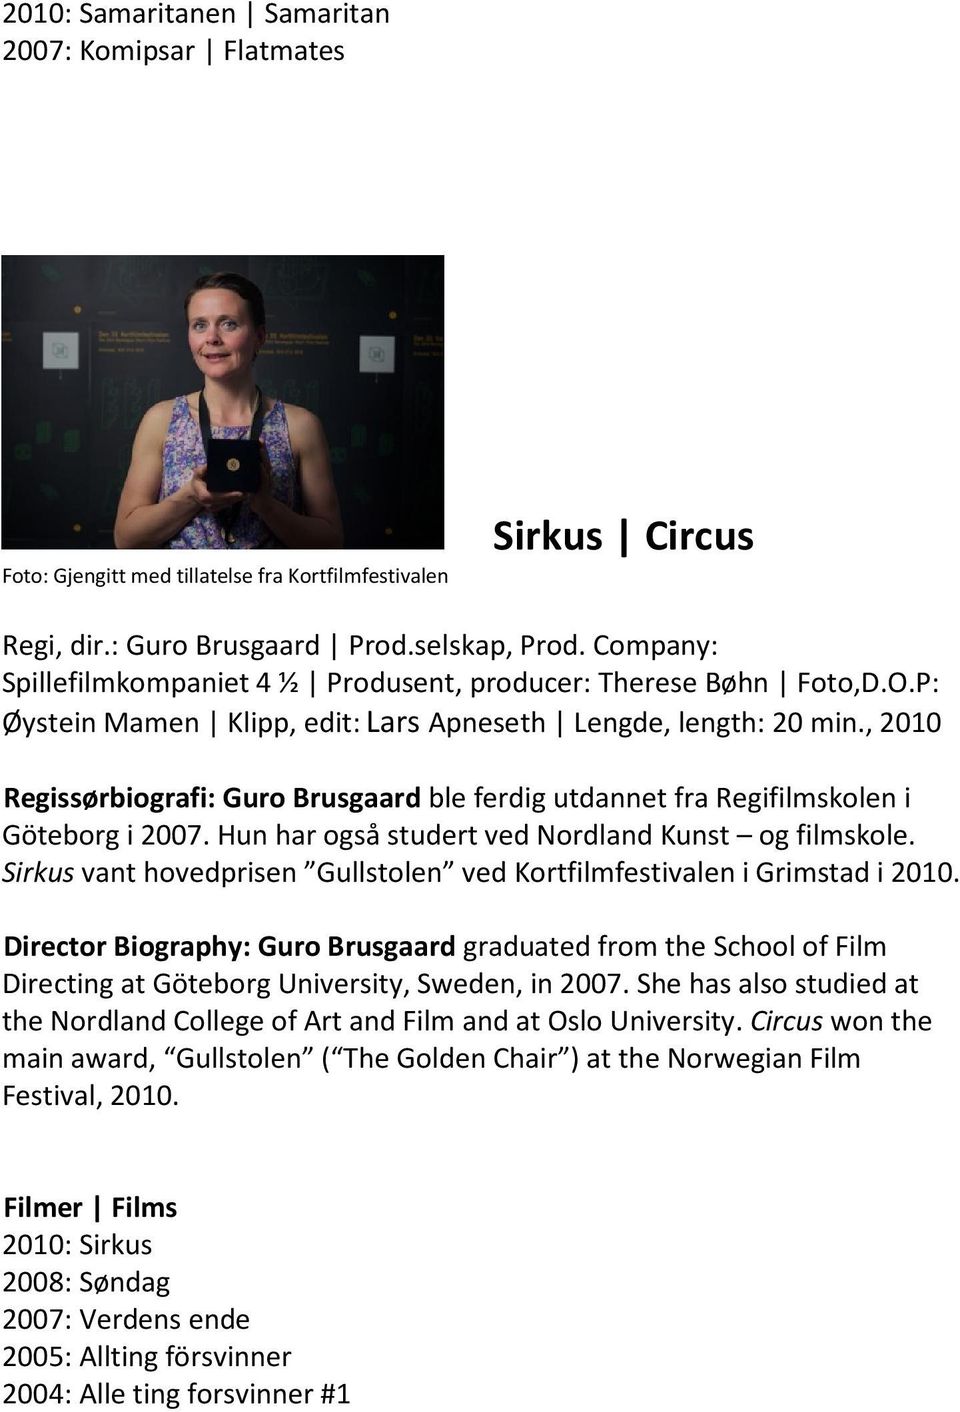 , 2010 Regissørbiografi: Guro Brusgaard ble ferdig utdannet fra Regifilmskolen i Göteborg i 2007. Hun har også studert ved Nordland Kunst og filmskole.